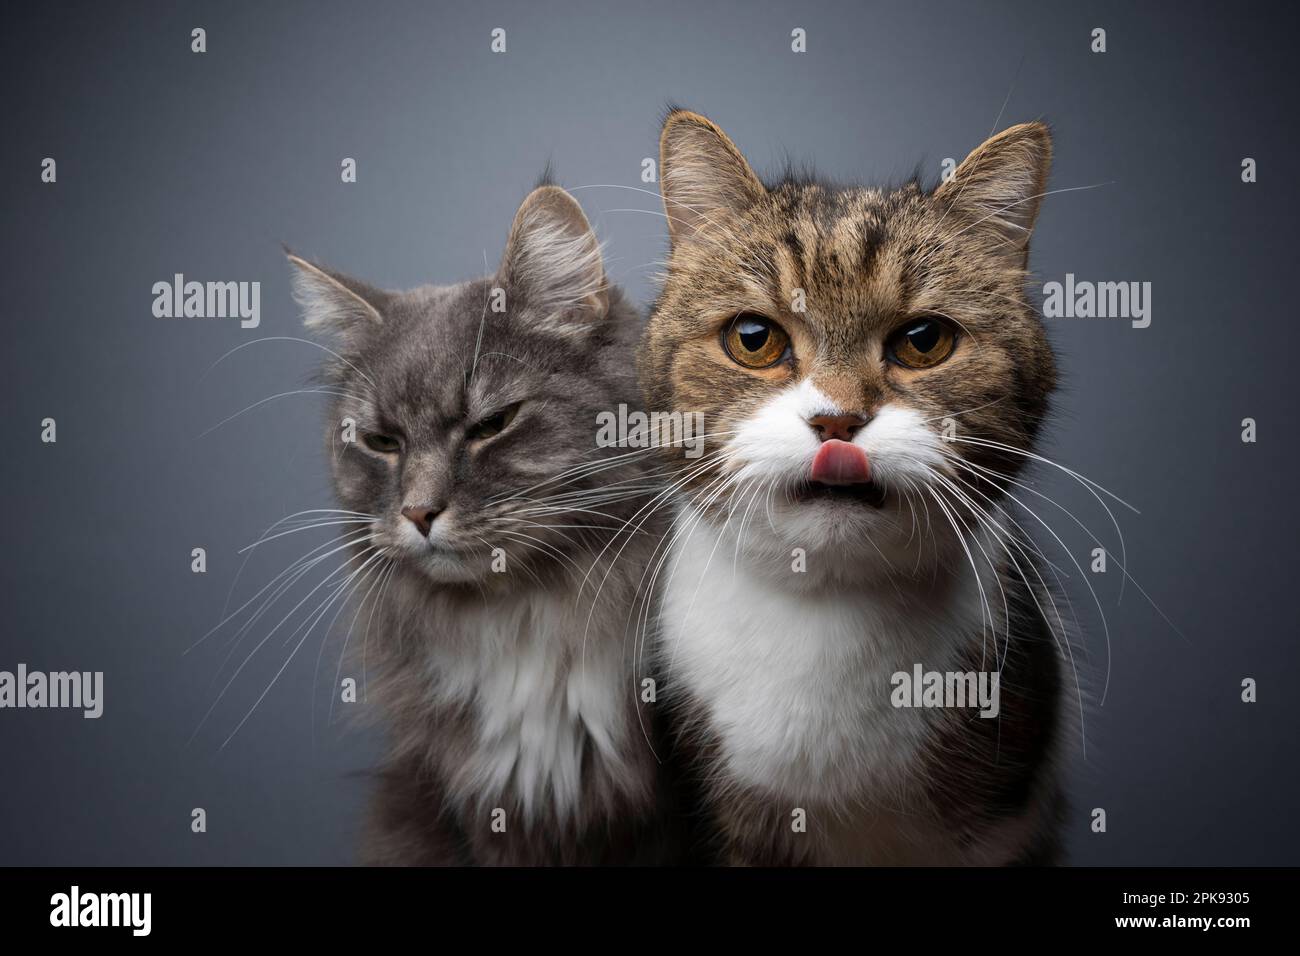 due gatti diversi affiancati. concetto per rivalità, gelosia o trattamento preferenziale dei gatti in famiglia multi gatto Foto Stock